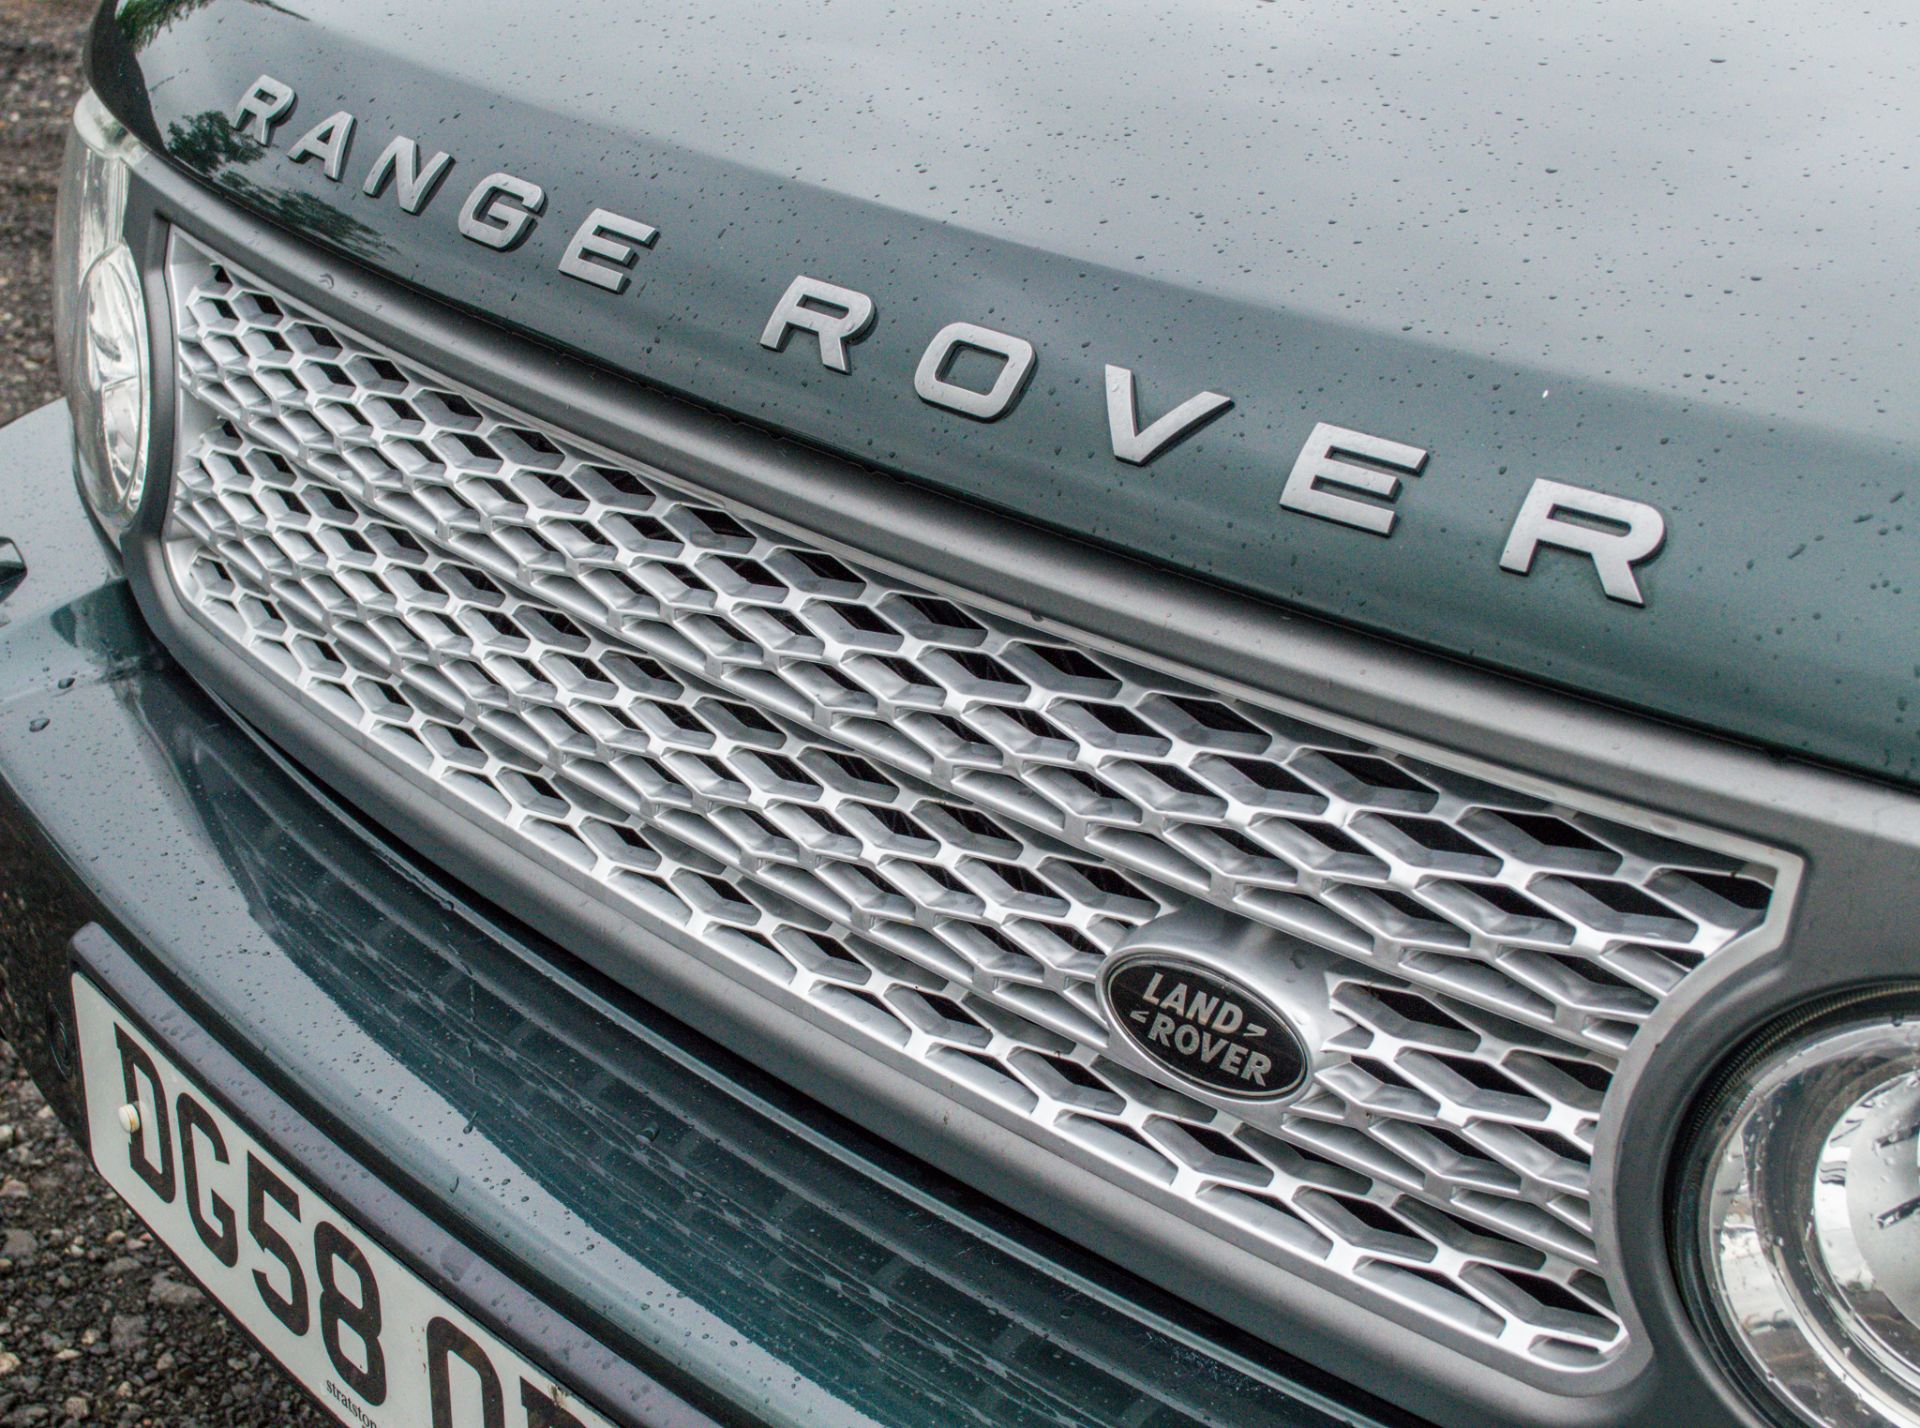 Range Rover VOGUE TDV8 3.6 diesel 5 door estate car Registration number: DG58 OBS Date of - Image 19 of 34